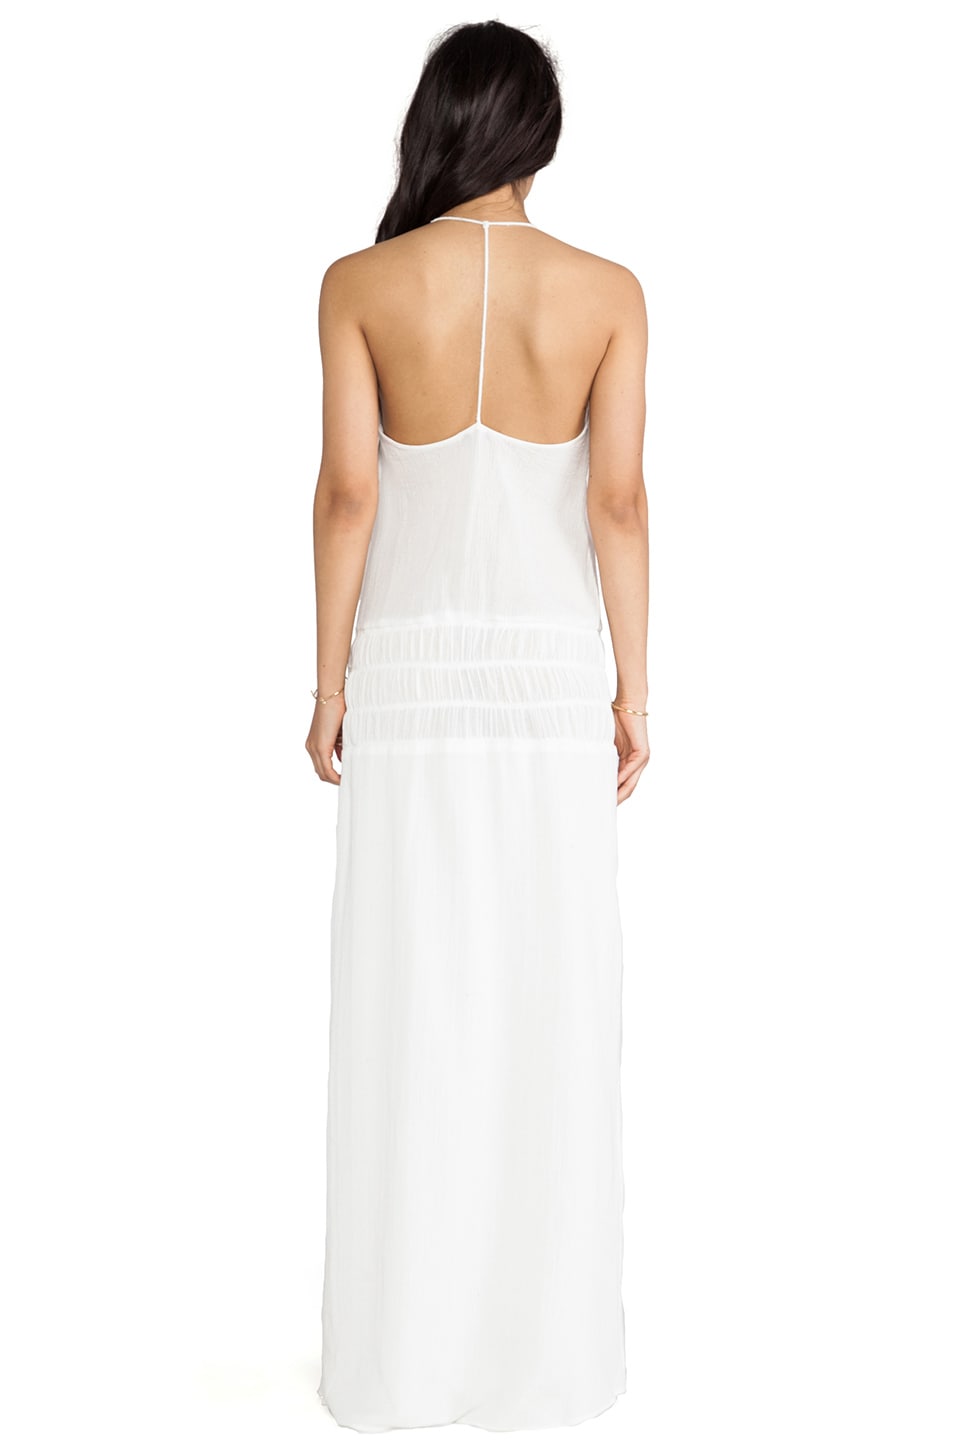 Dolce Vita Mehadi Dress in White | REVOLVE